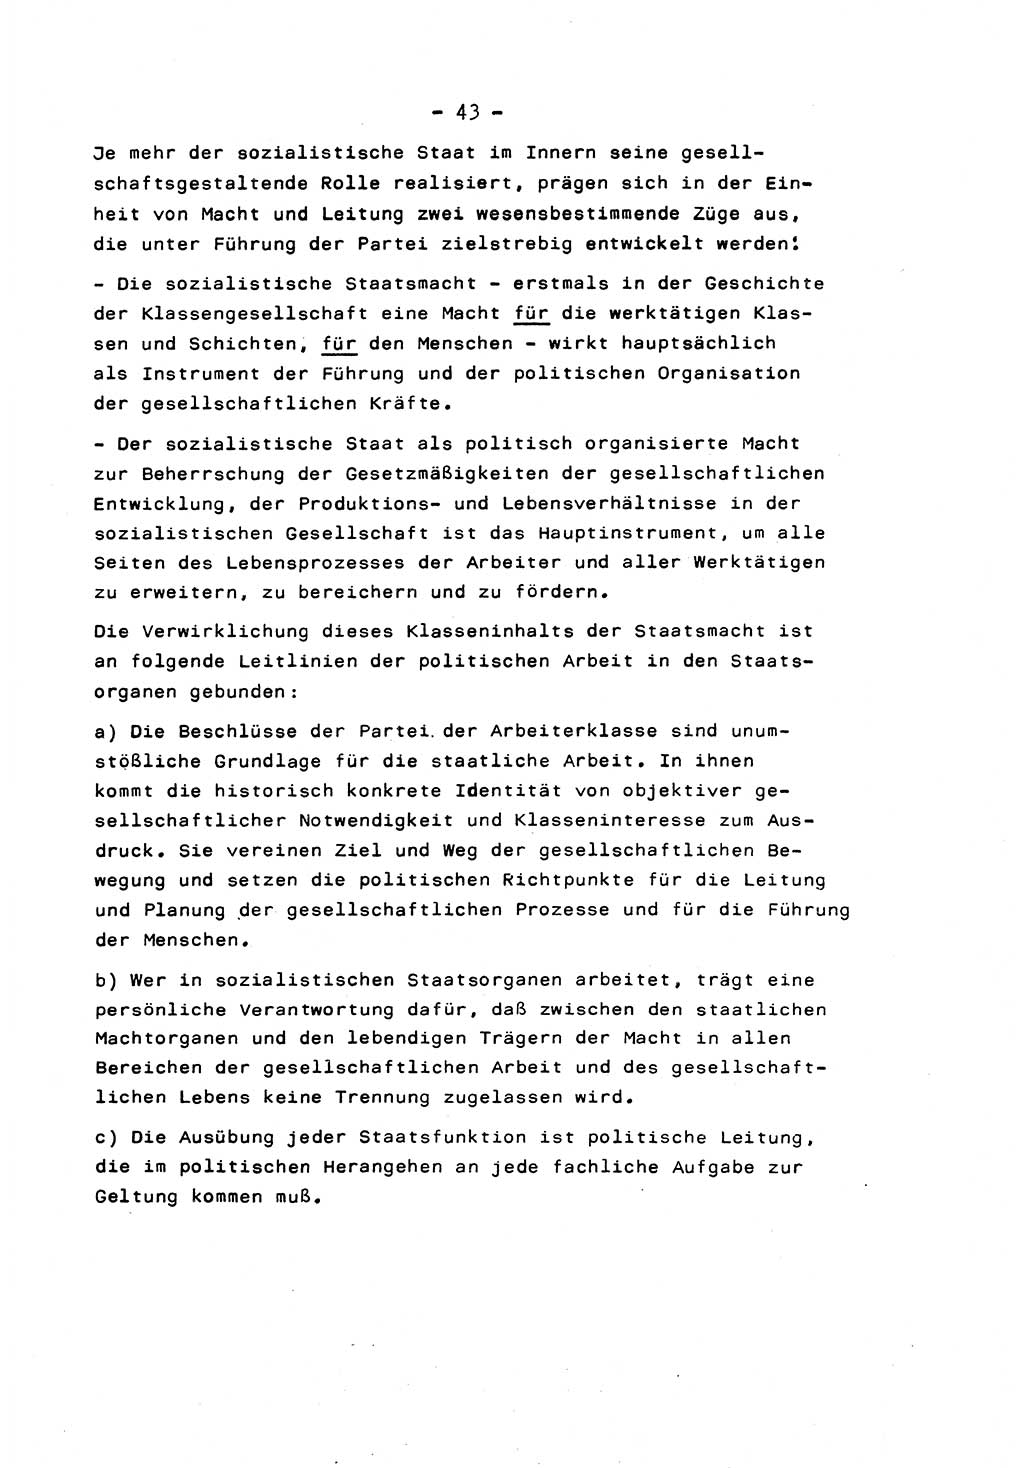 Marxistisch-leninistische Staats- und Rechtstheorie [Deutsche Demokratische Republik (DDR)] 1975, Seite 43 (ML St.-R.-Th. DDR 1975, S. 43)